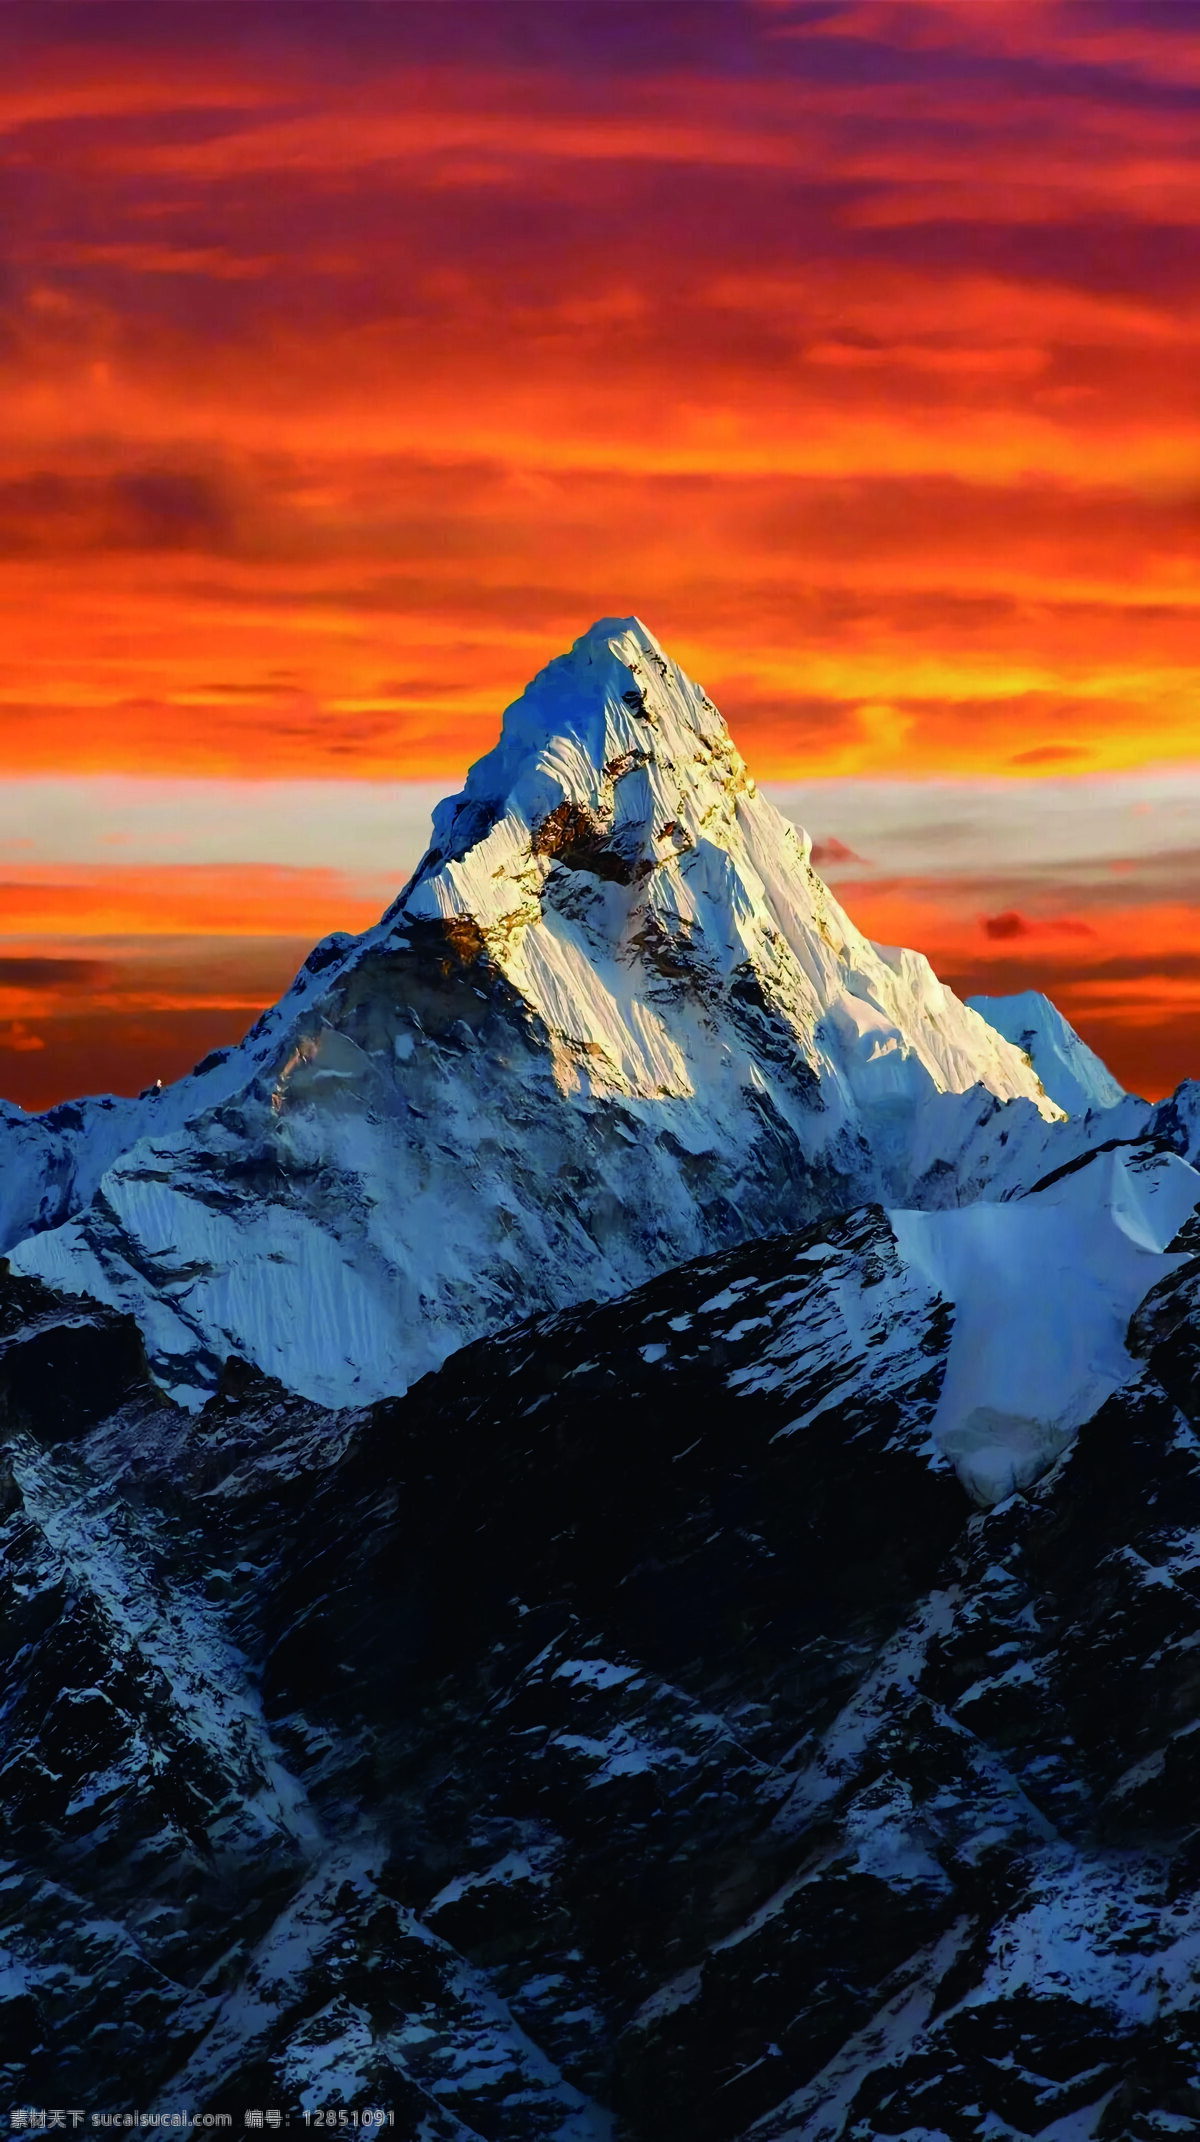 珠峰图片 珠峰 珠穆朗玛峰 雪山 晚霞 山峰 世界最高峰 山脉 自然景观 山水风景